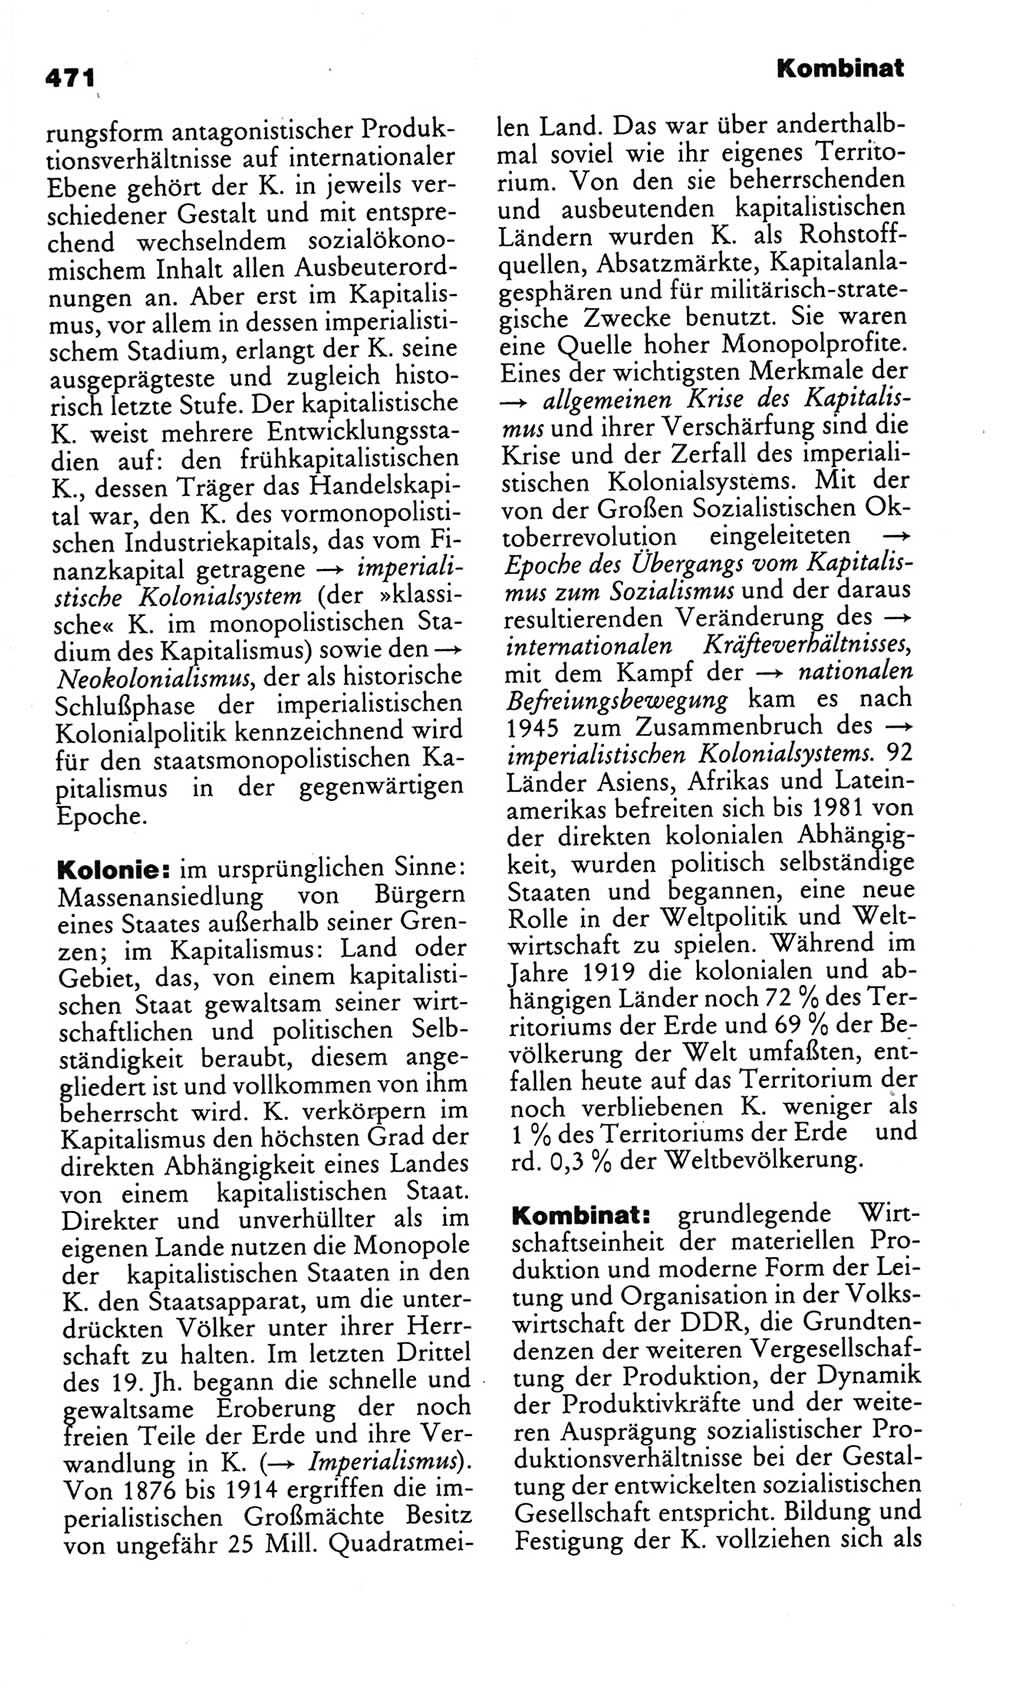 Kleines politisches Wörterbuch [Deutsche Demokratische Republik (DDR)] 1986, Seite 471 (Kl. pol. Wb. DDR 1986, S. 471)